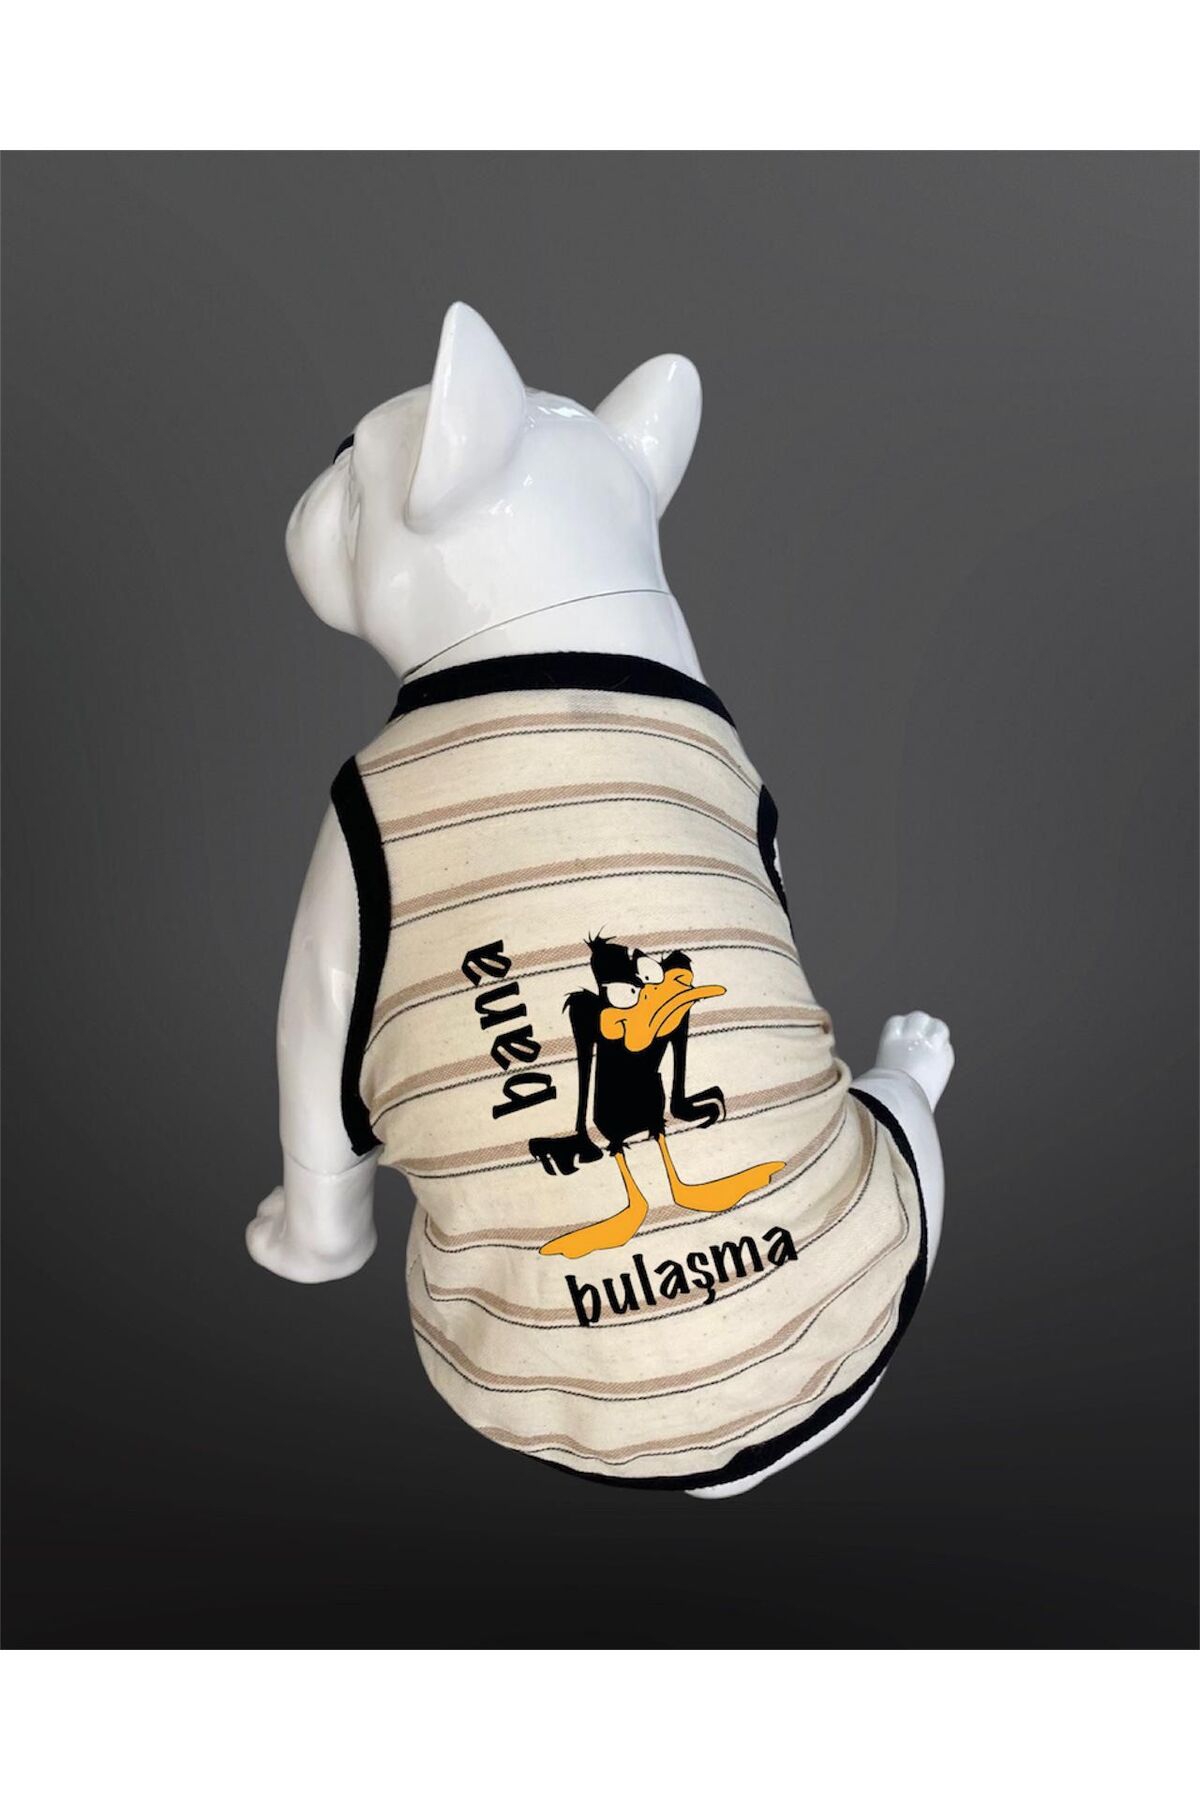 Buddy Store Kedi Ve Köpek Kıyafeti Atlet - Bana Bulaşma Baskılı Bej Rengi Çizgili Atlet